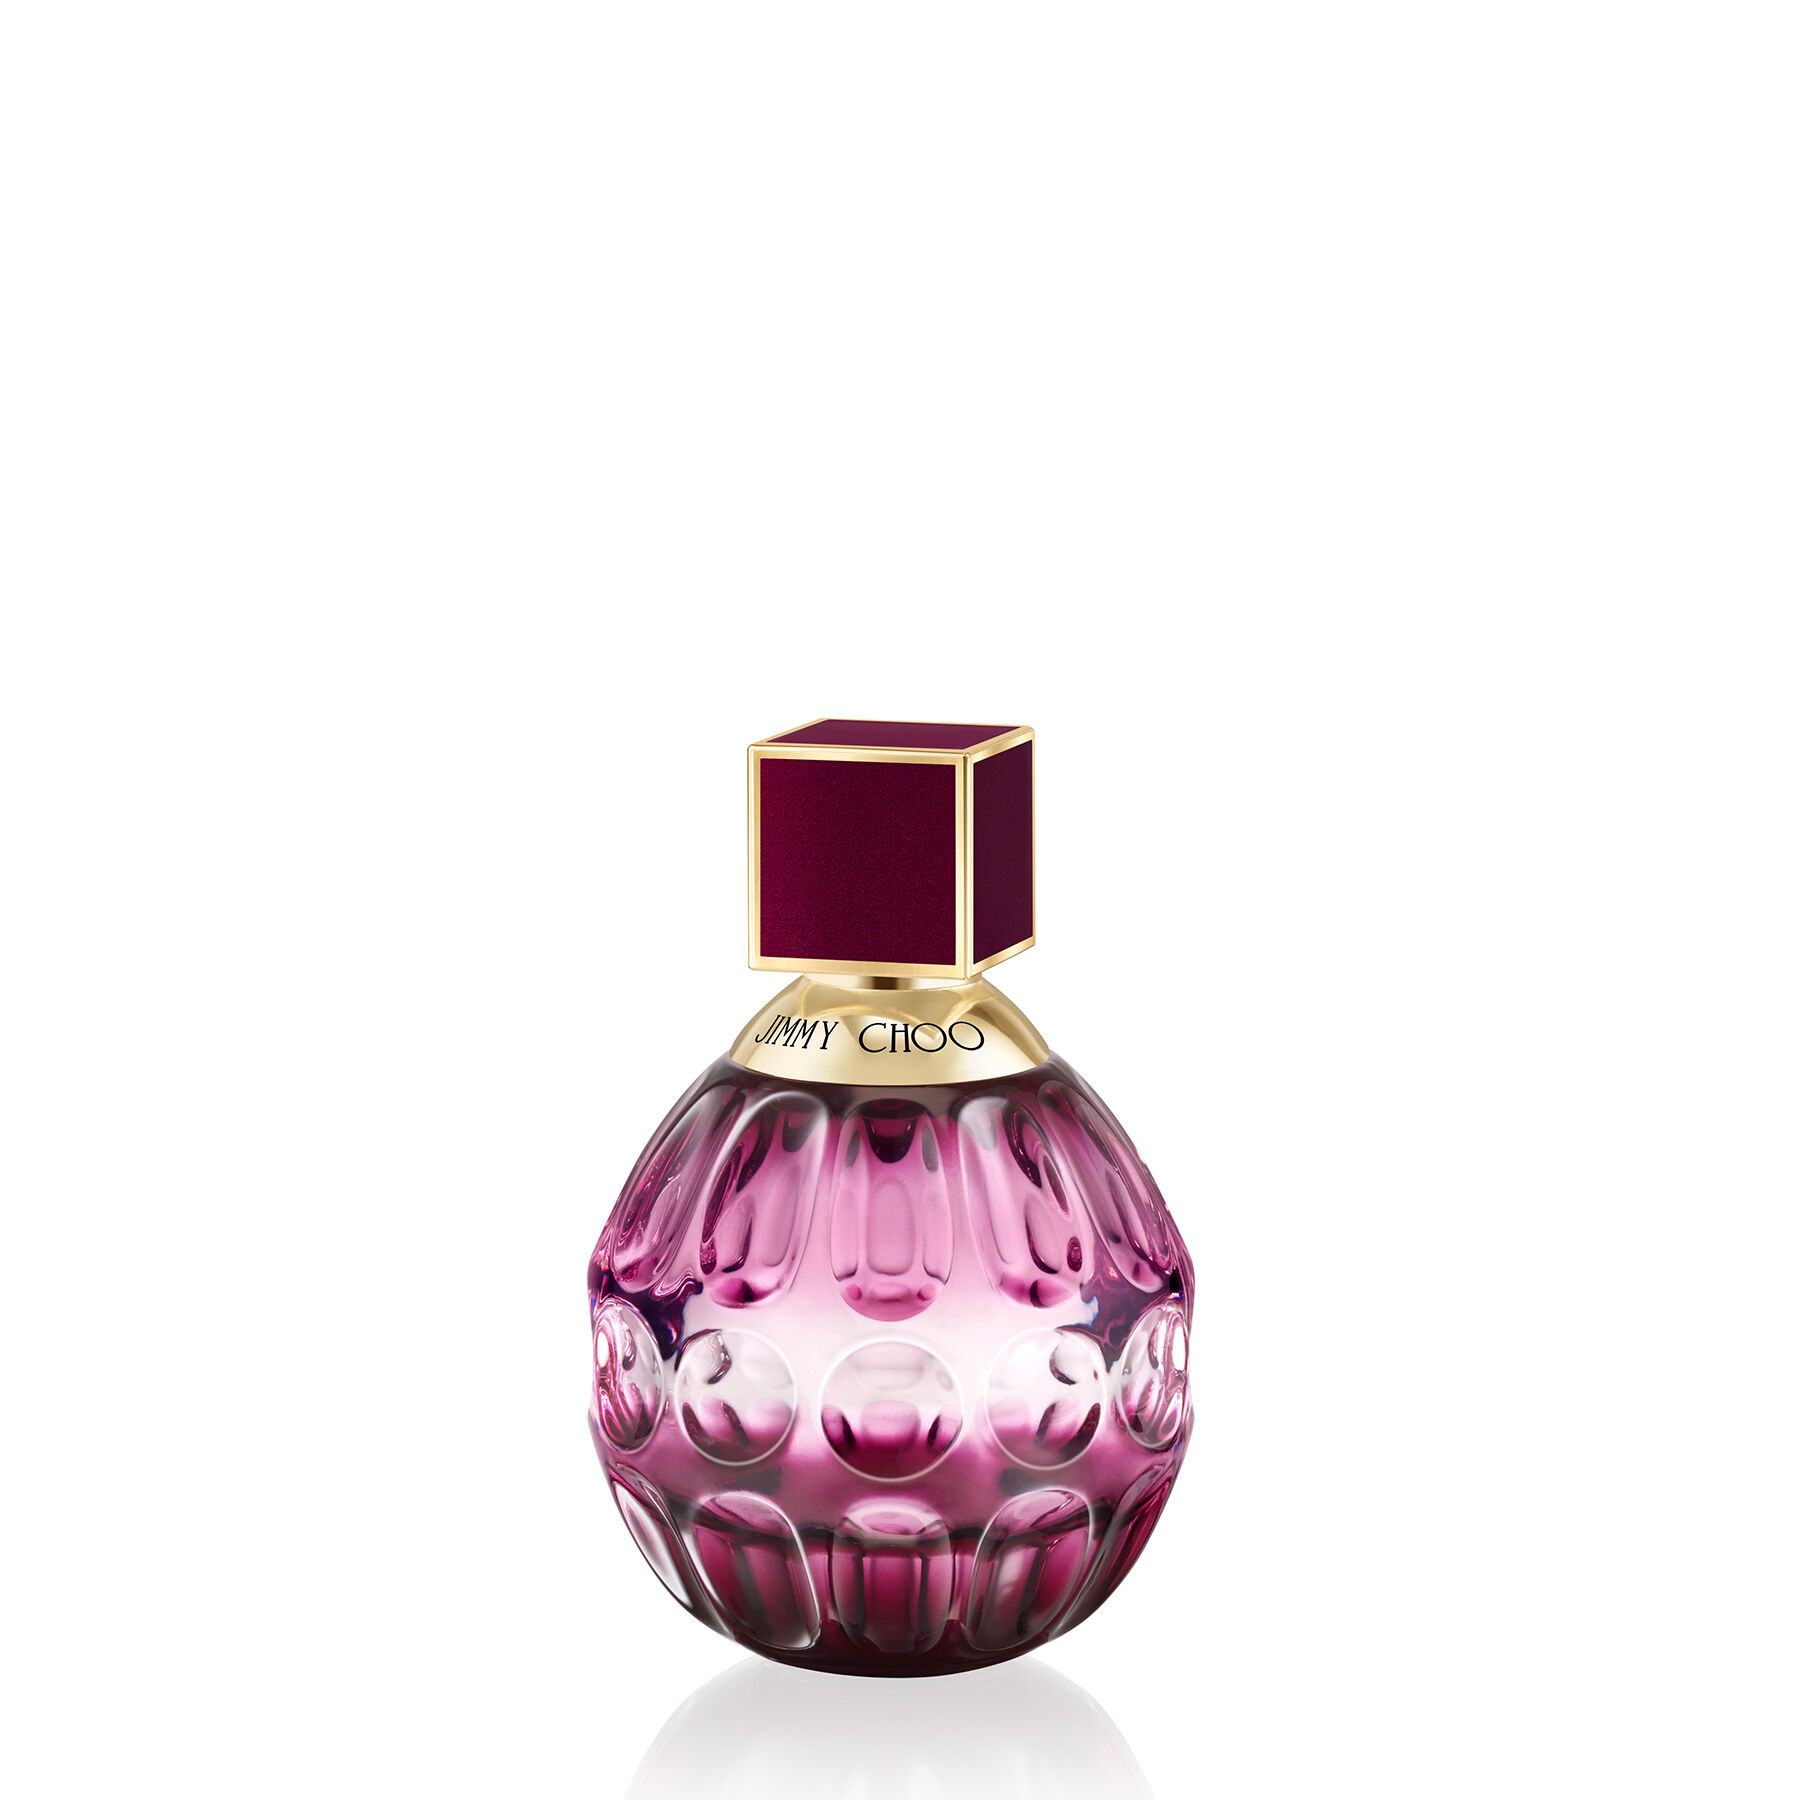 jimmy choo perfume purple bottle